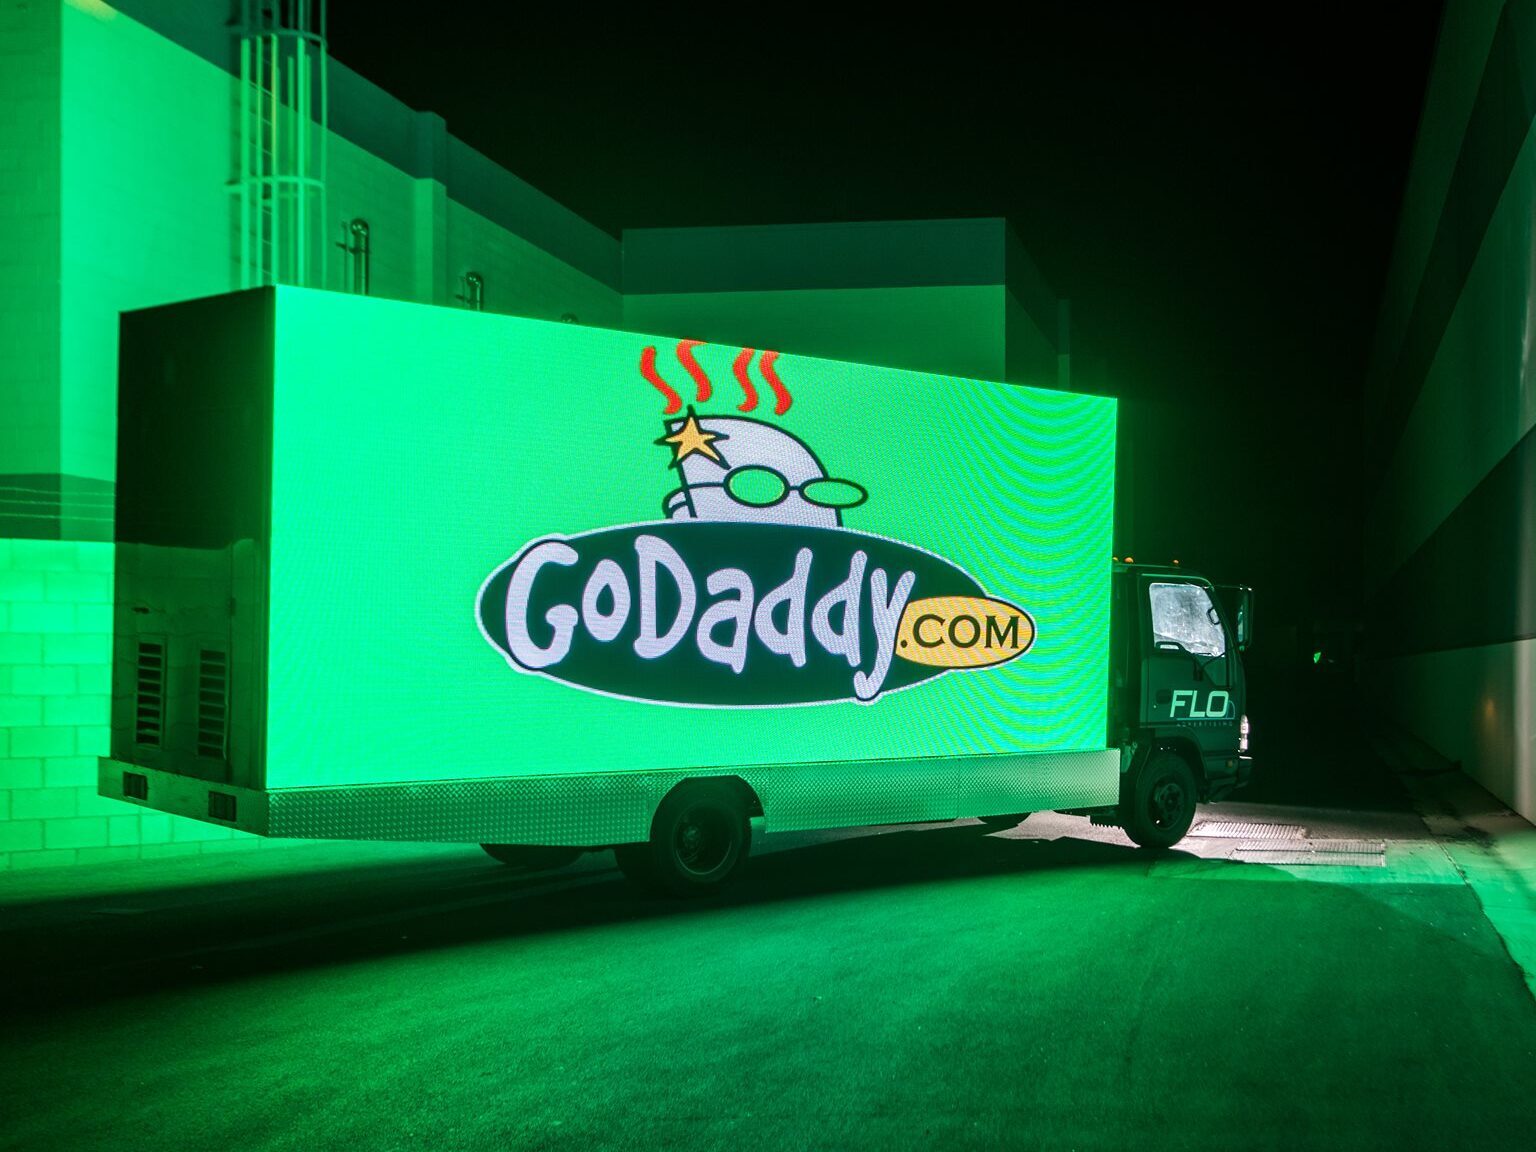 A billboard truck with a GoDaddy logo on it.